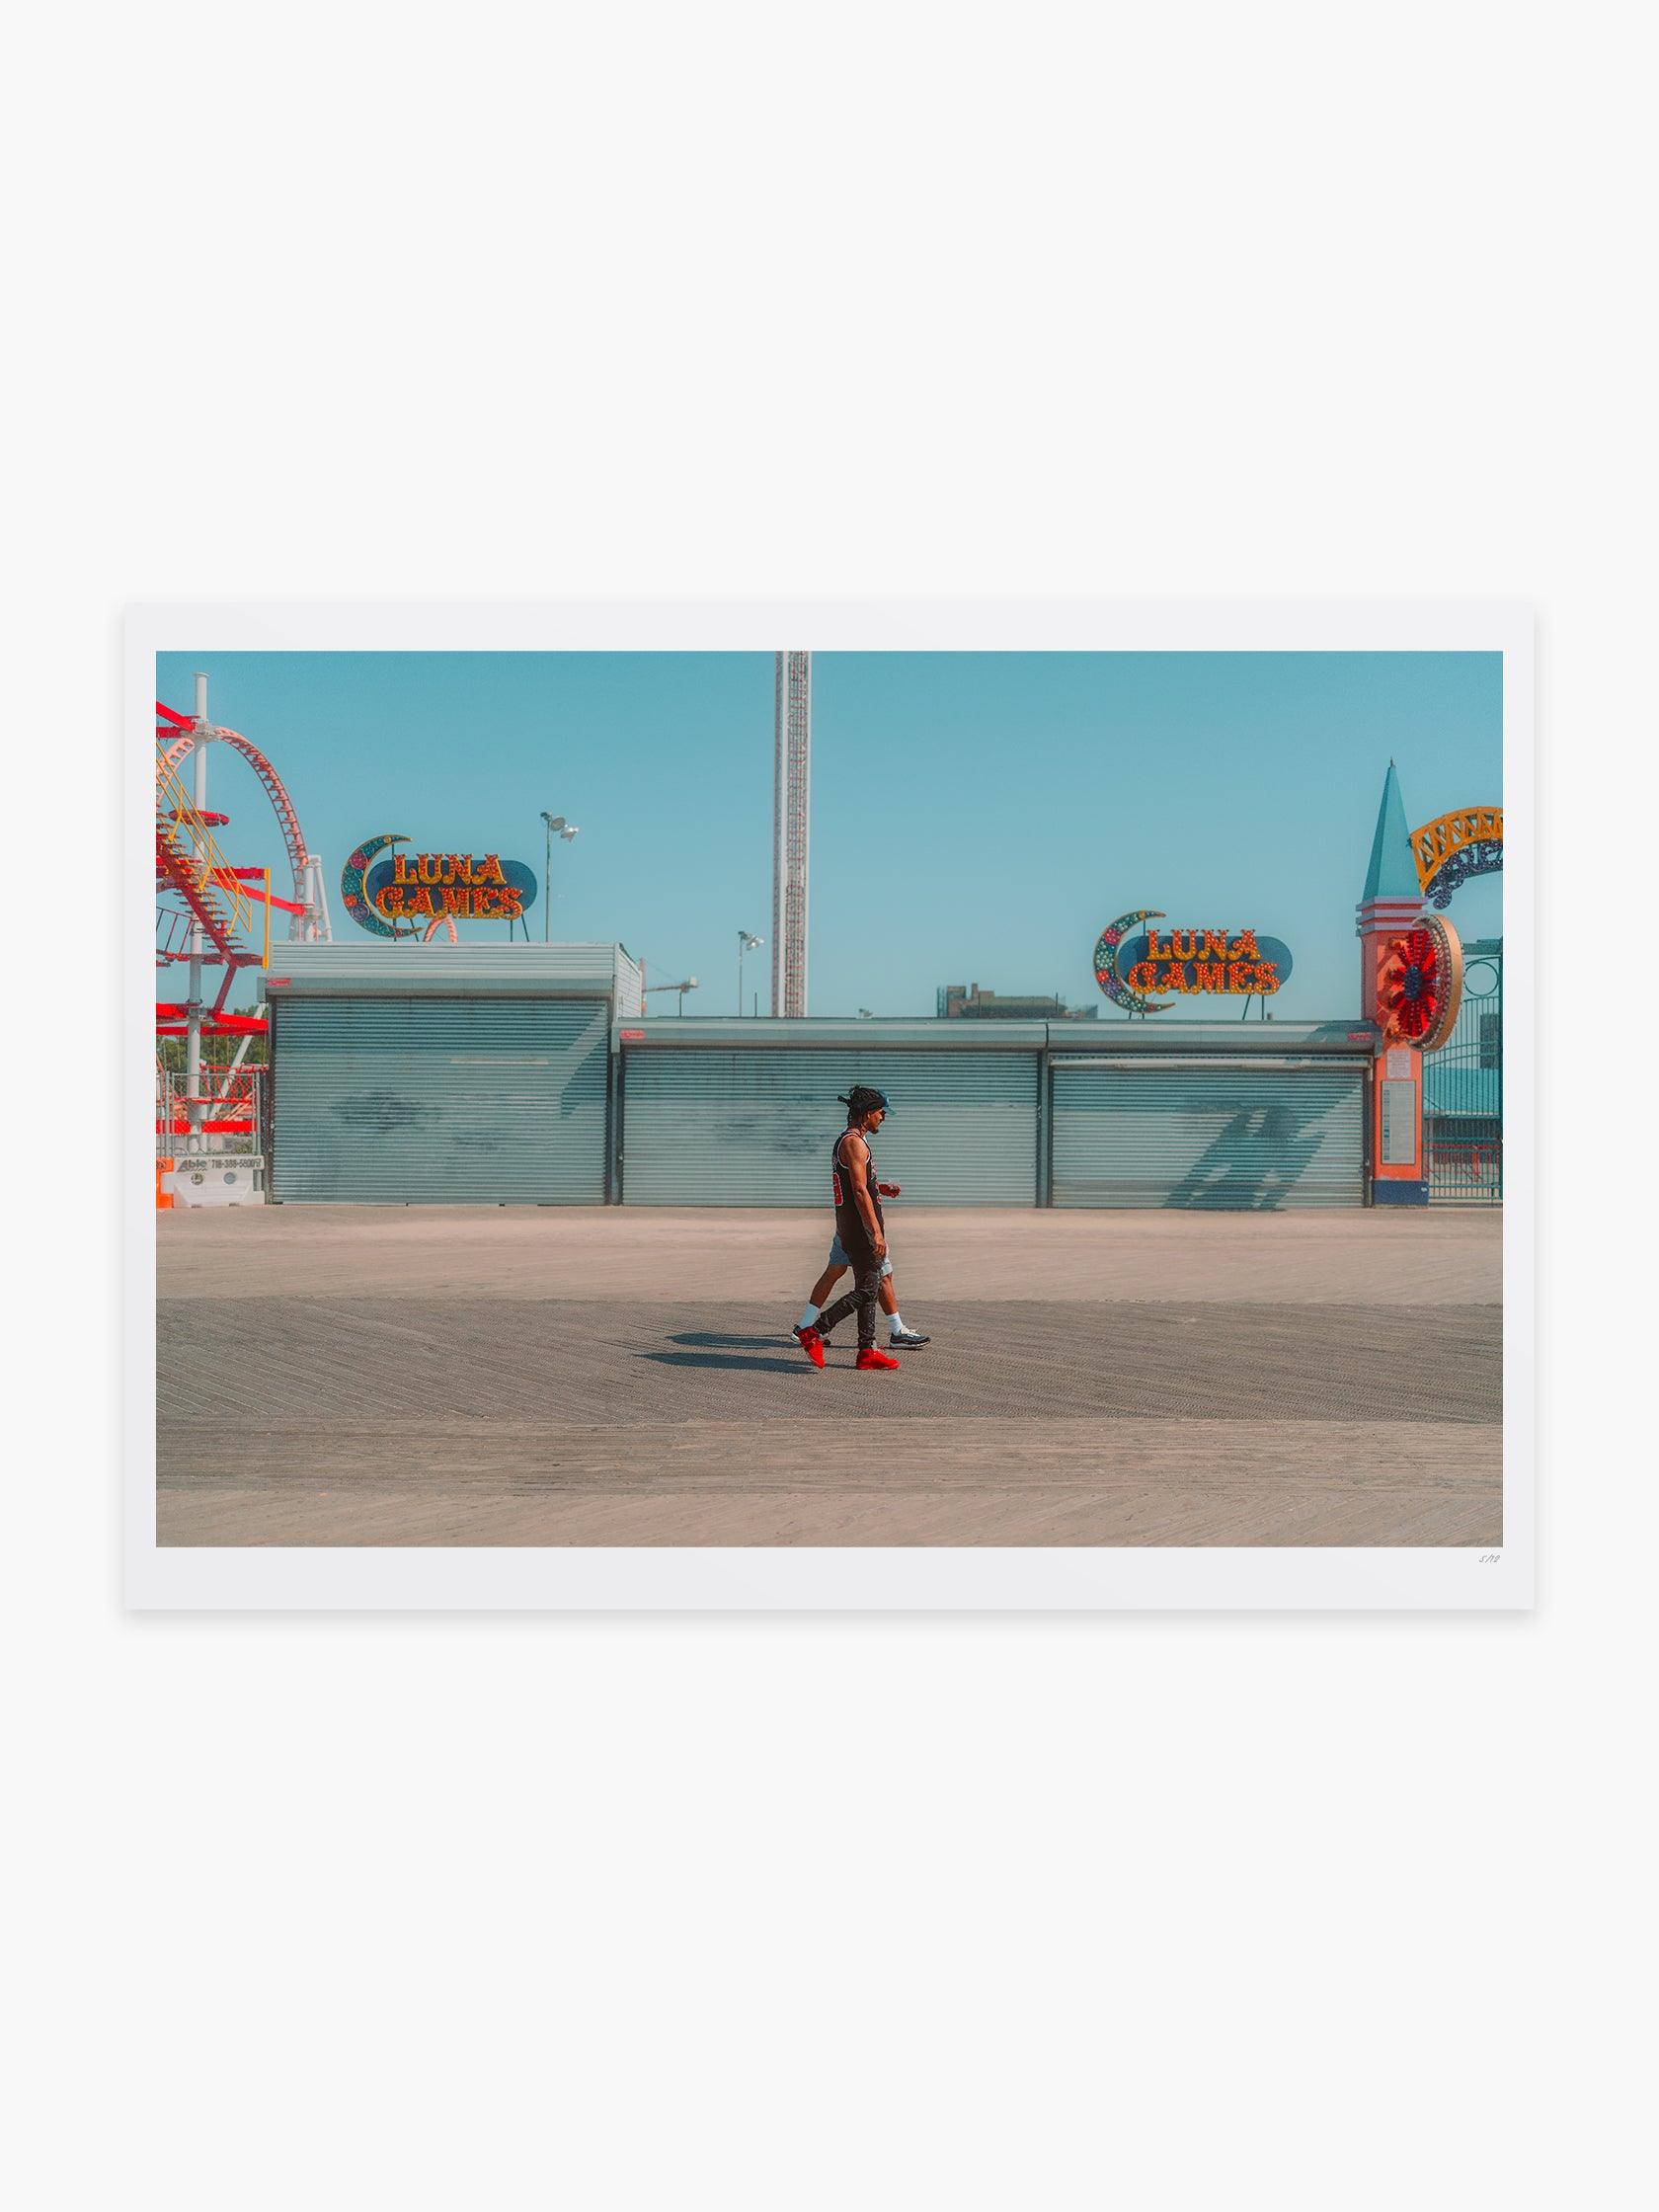 Coney Island Boardwalk by Michael Boegl - Mankovsky Gallery